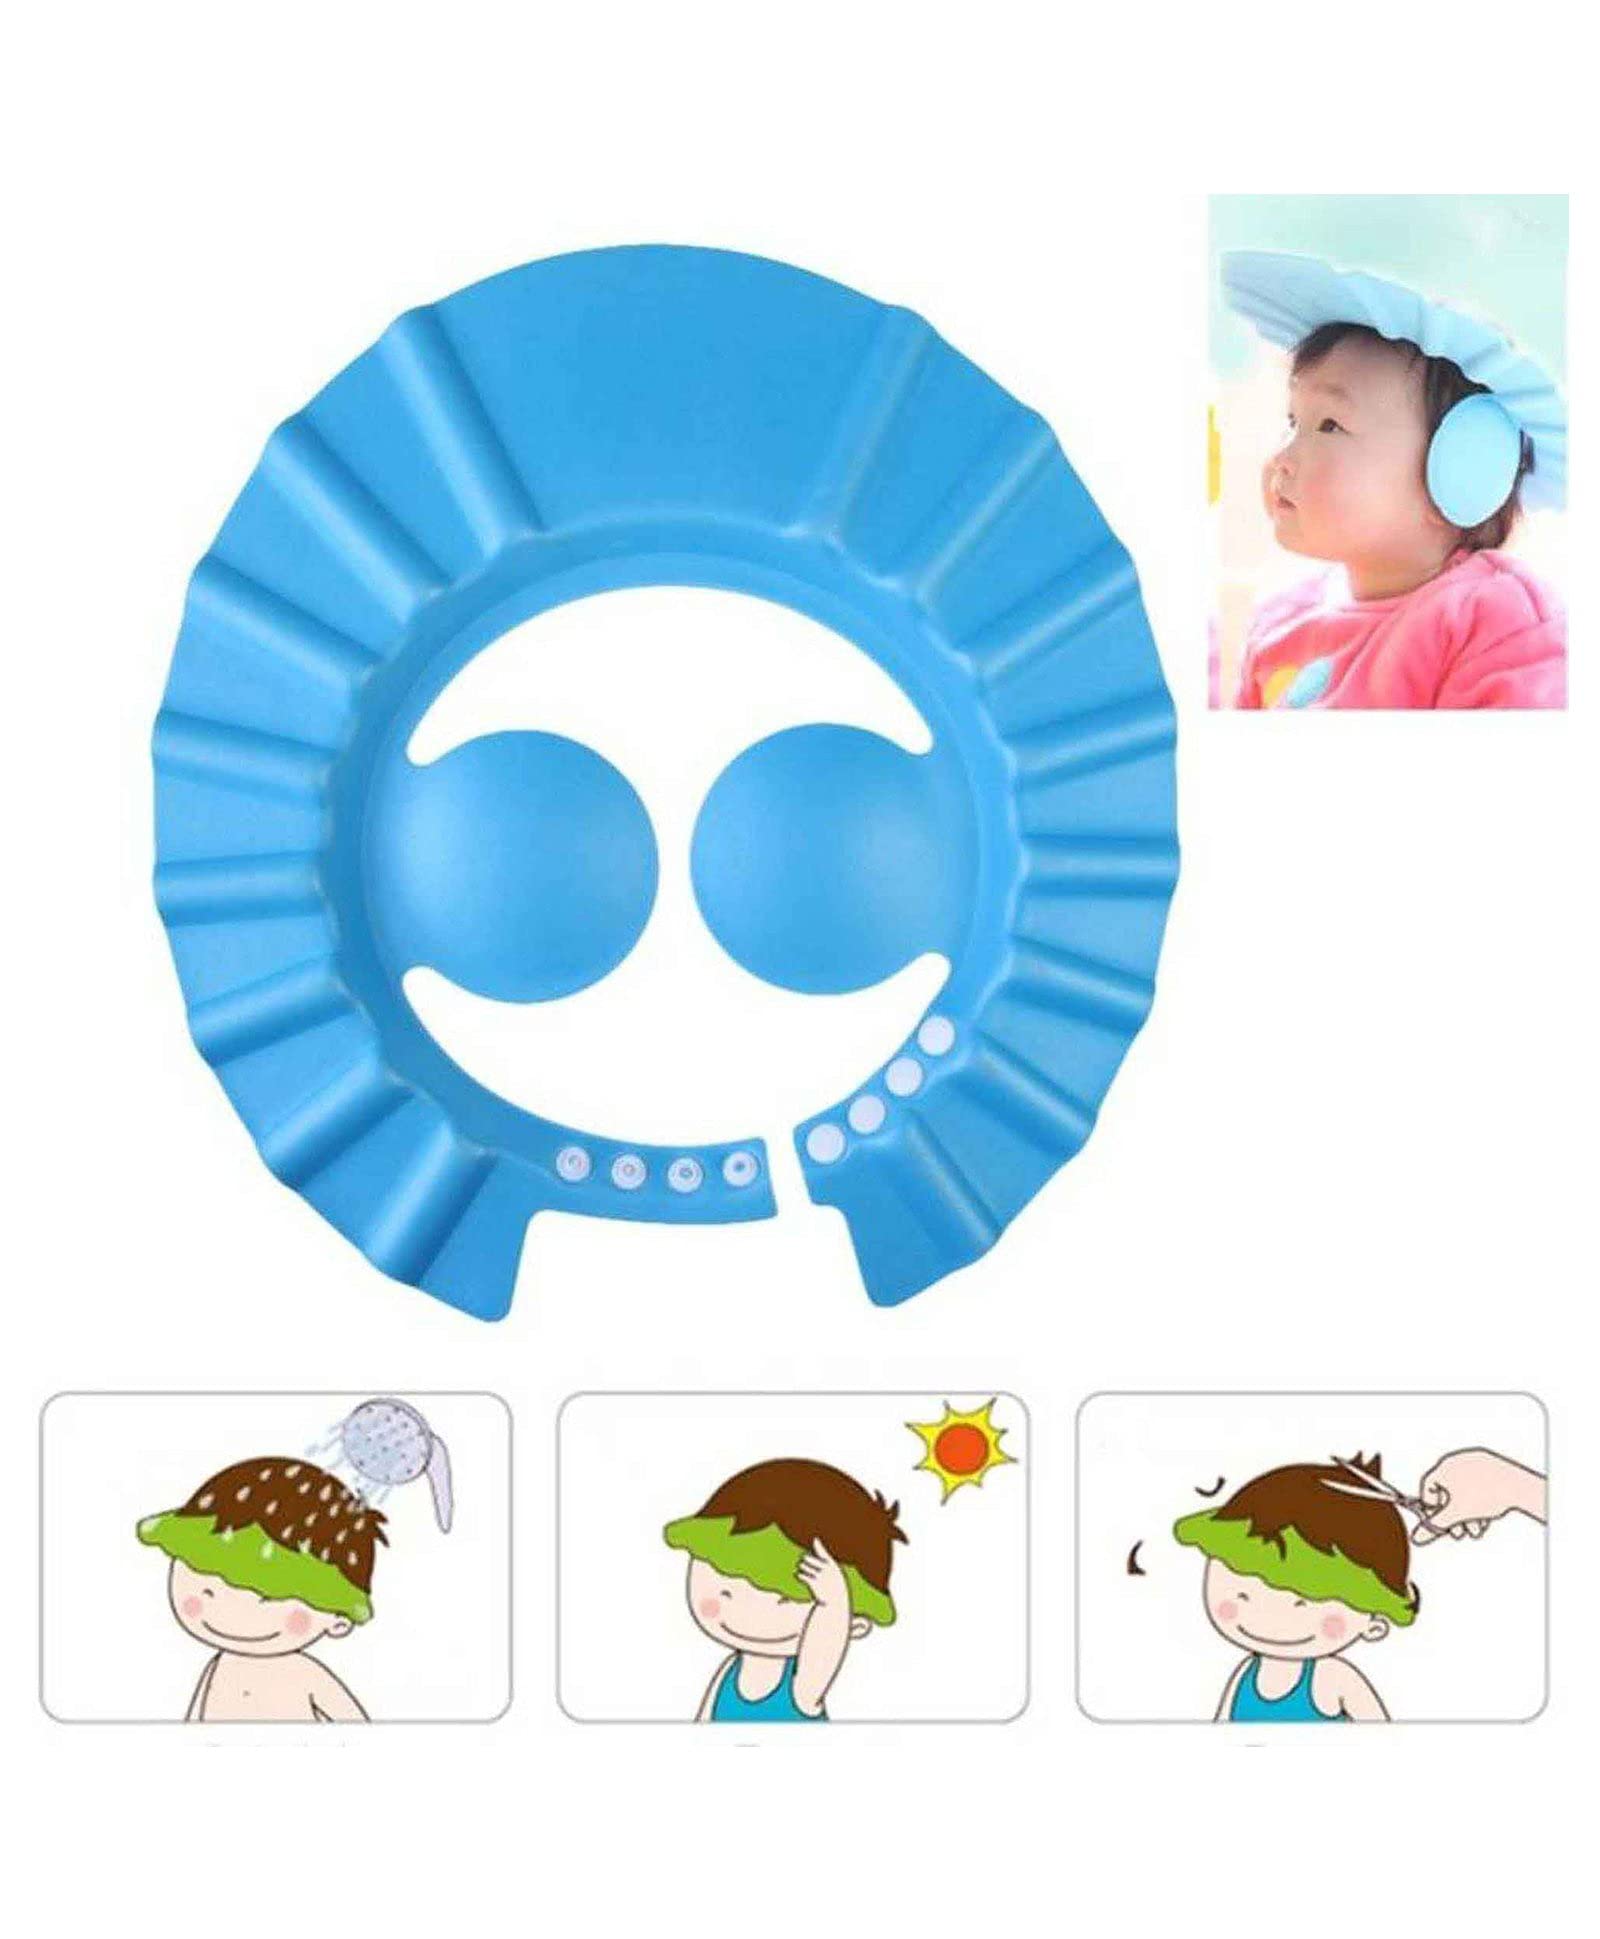 Kuber Industries Soft Adjustable Visor Hat Safe Shampoo Shower Bathing Protection Bath Cap for Toddler, Baby, Kids, Children-Pack of 2 (Blue)-HS_38_KUBMART21343